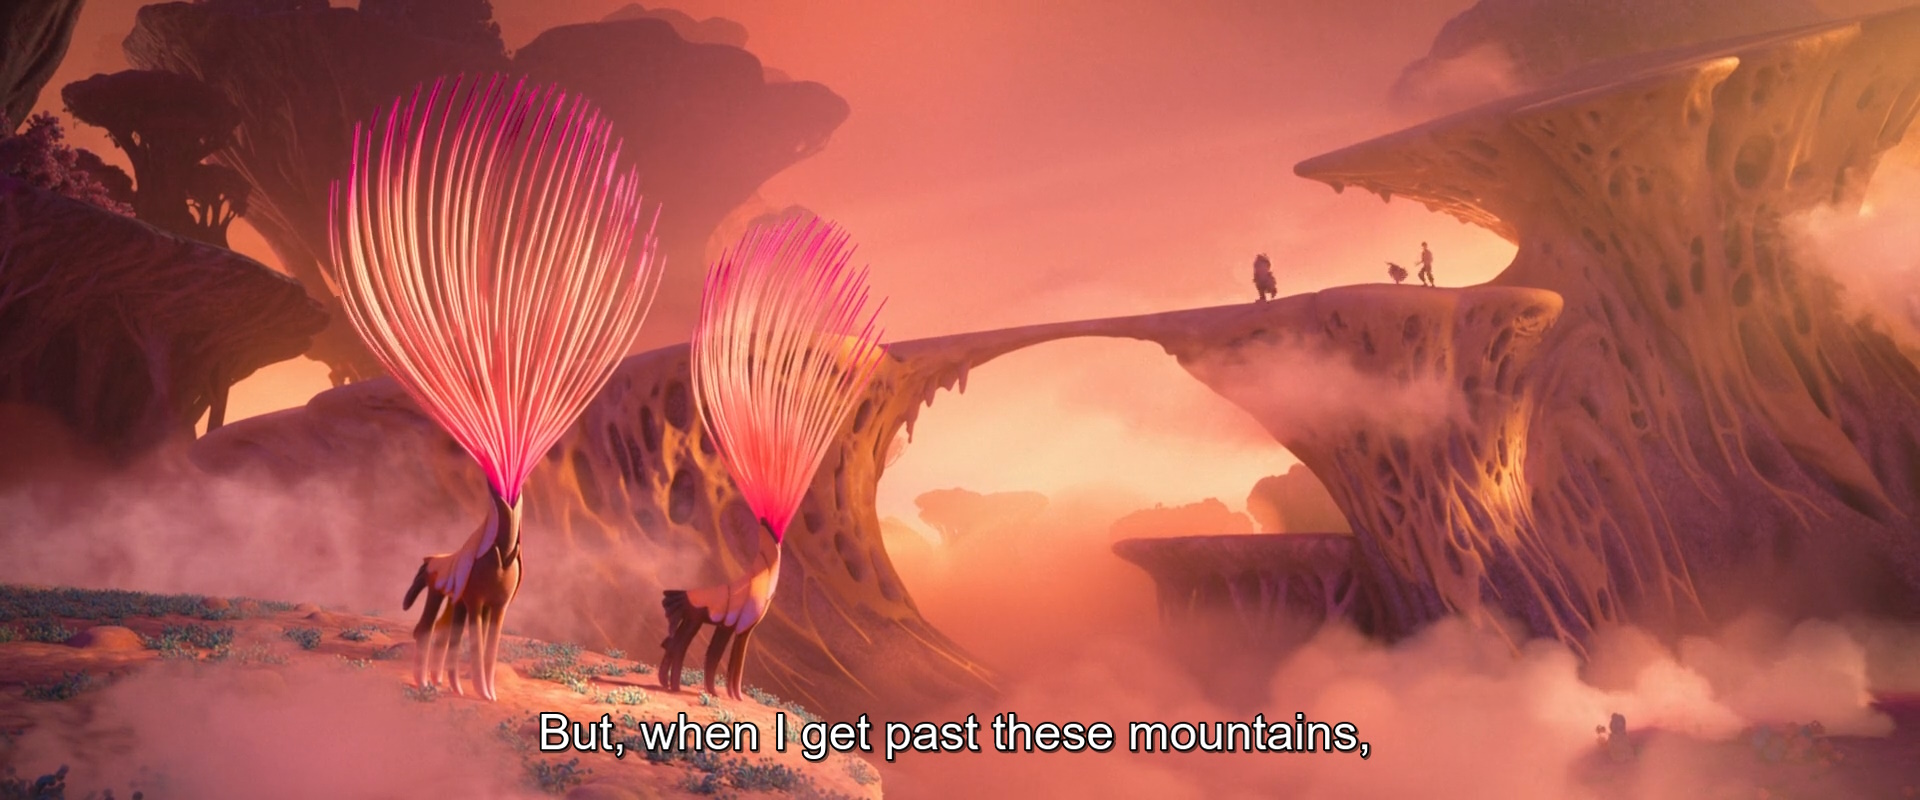 capture d'écran de Strange World - Avalonia, l'étrange Voyage montrant un paysage rose-orangé avec des créatures fantastiques